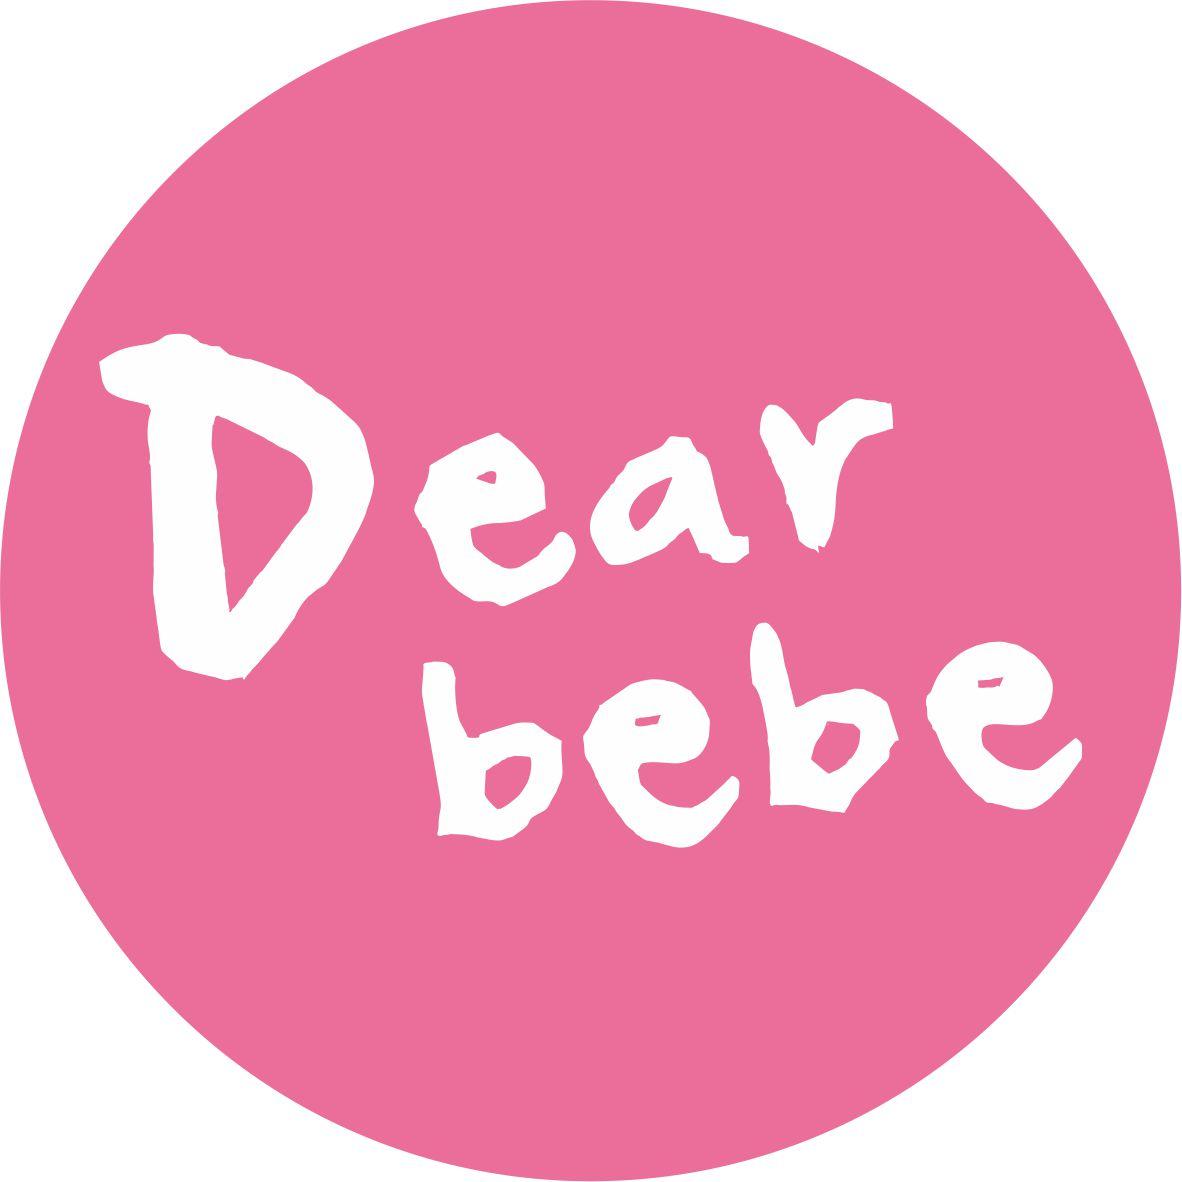 Dearbebe